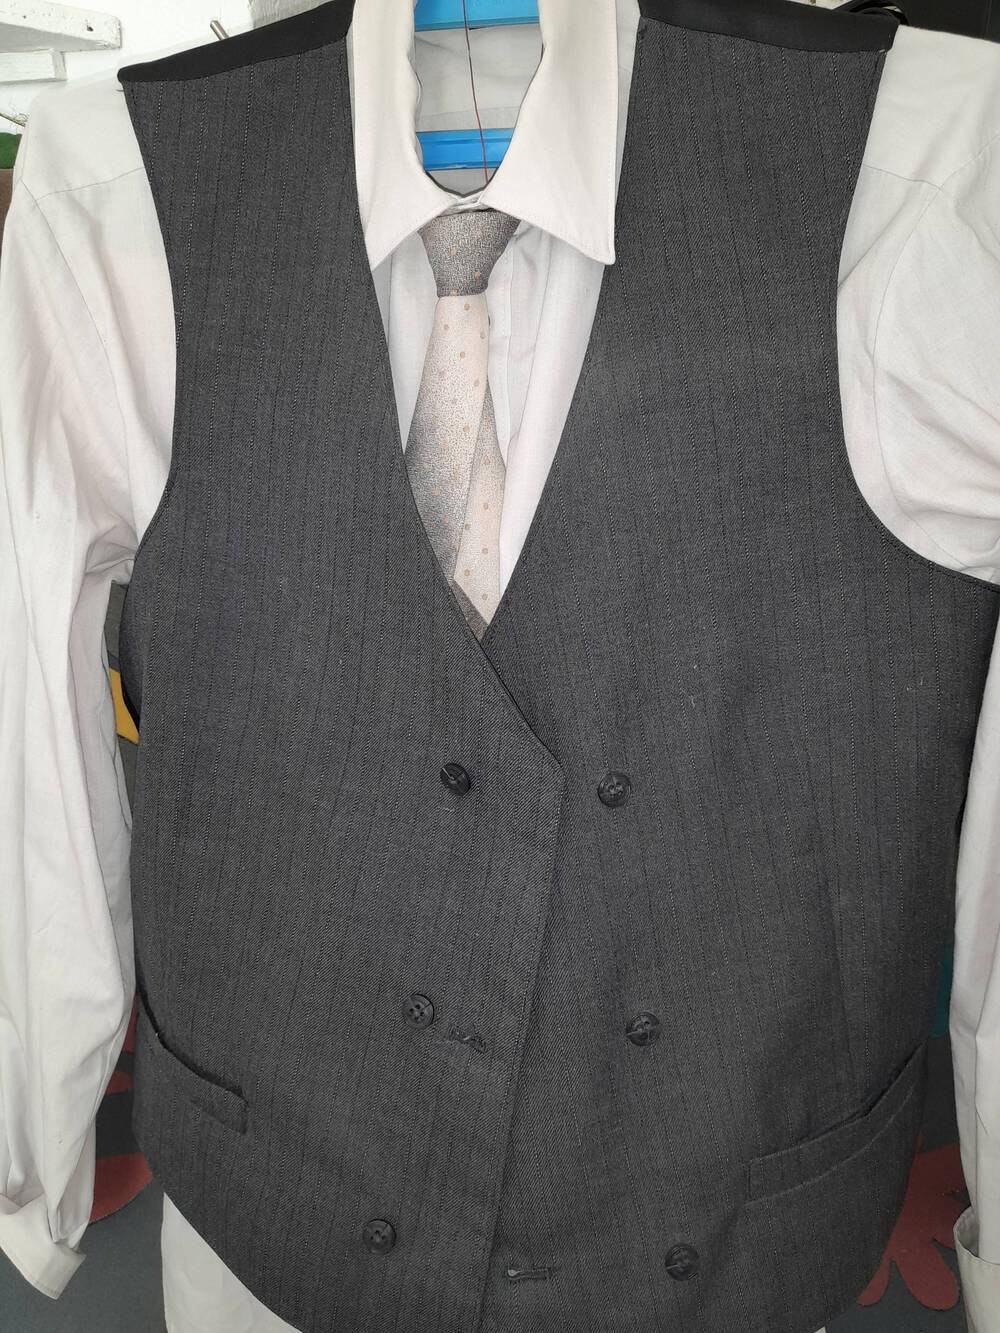 Рубашка мужская, размер 50, цвет небесно-серый, с длинными рукавами, из х/б и синтетической ткани, пуговицы белого цвета, принадл. Хайретдинову Р. М.